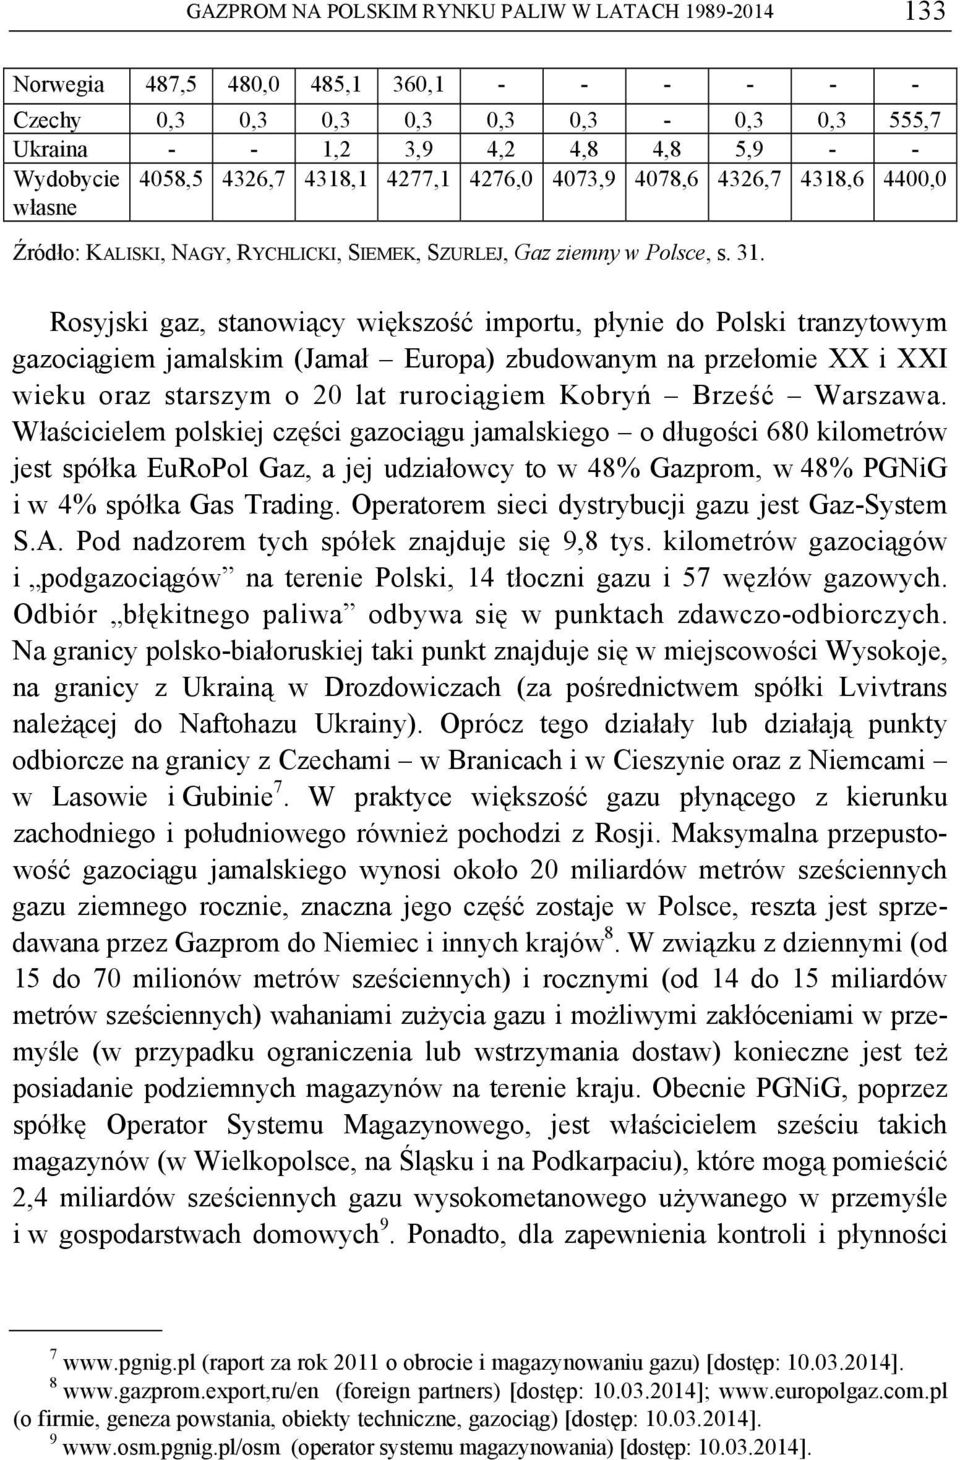 Rosyjski gaz, stanowiący większość importu, płynie do Polski tranzytowym gazociągiem jamalskim (Jamał Europa) zbudowanym na przełomie XX i XXI wieku oraz starszym o 20 lat rurociągiem Kobryń Brześć